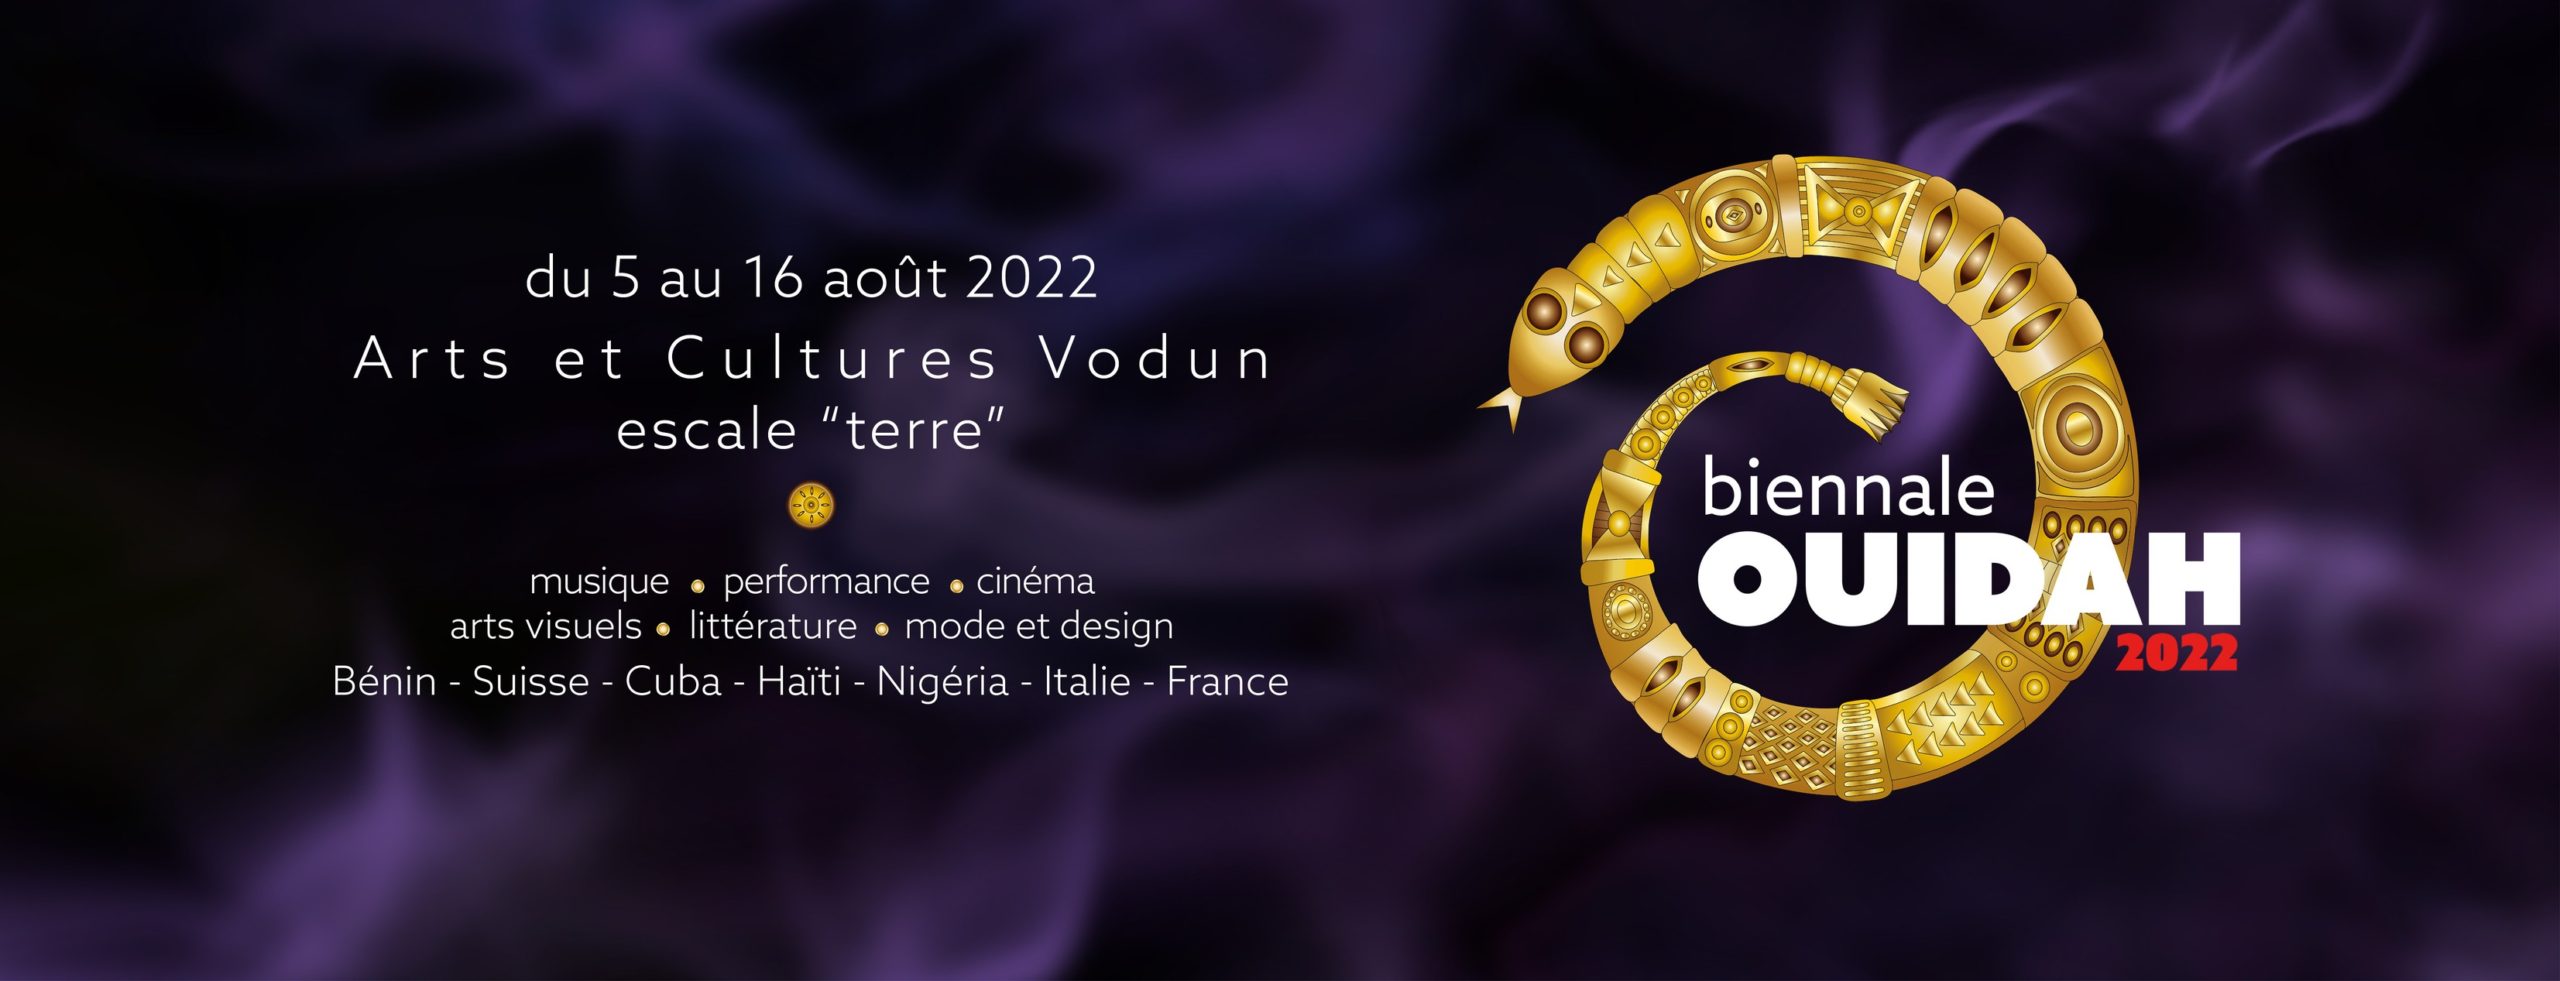 Biennale Ouidah 2022